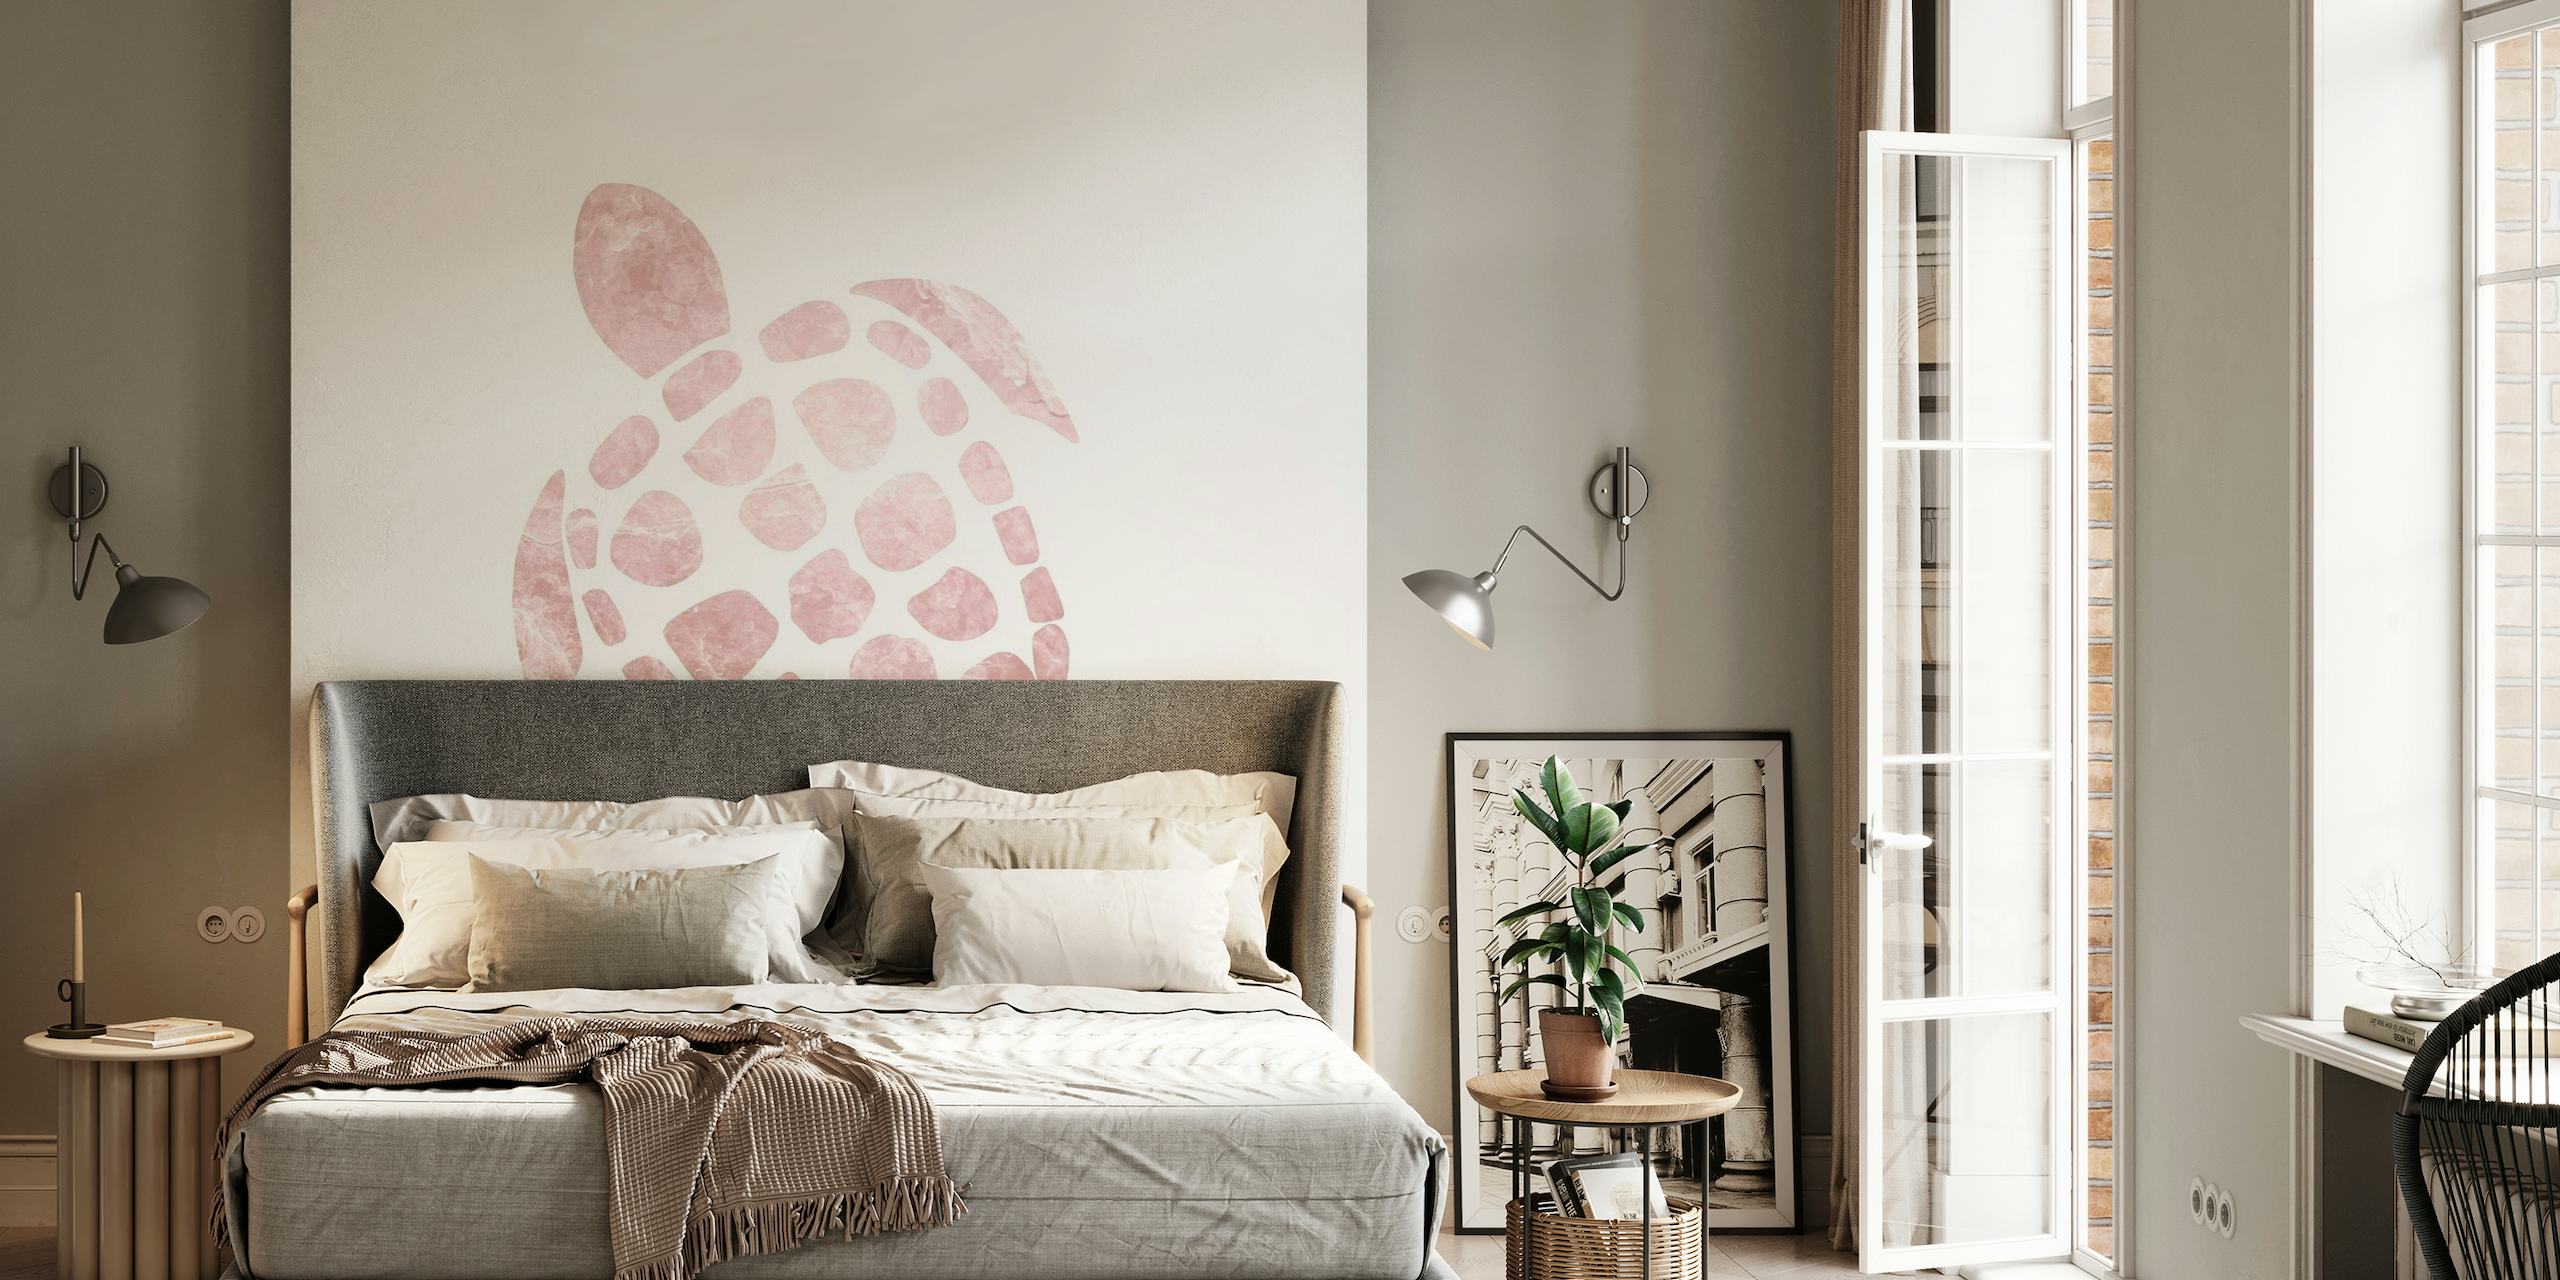 Ilustração minimalista de mural de parede de tartaruga marinha rosa em um fundo branco, perfeita para decoração de casa serena